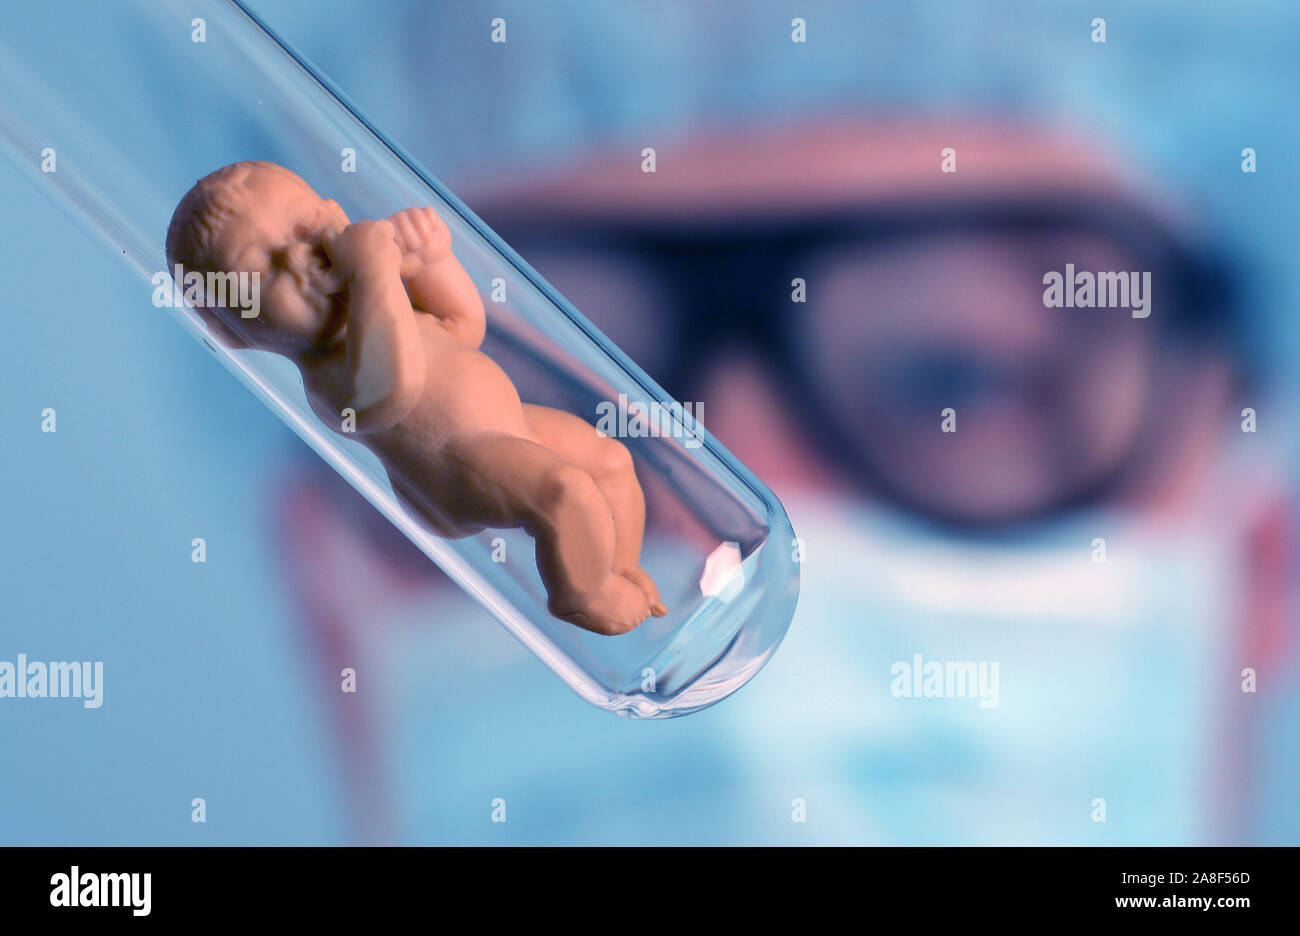 Retortenbaby im Reagenzglas, Puppe, Kein MR erforderlich, Stock Photo